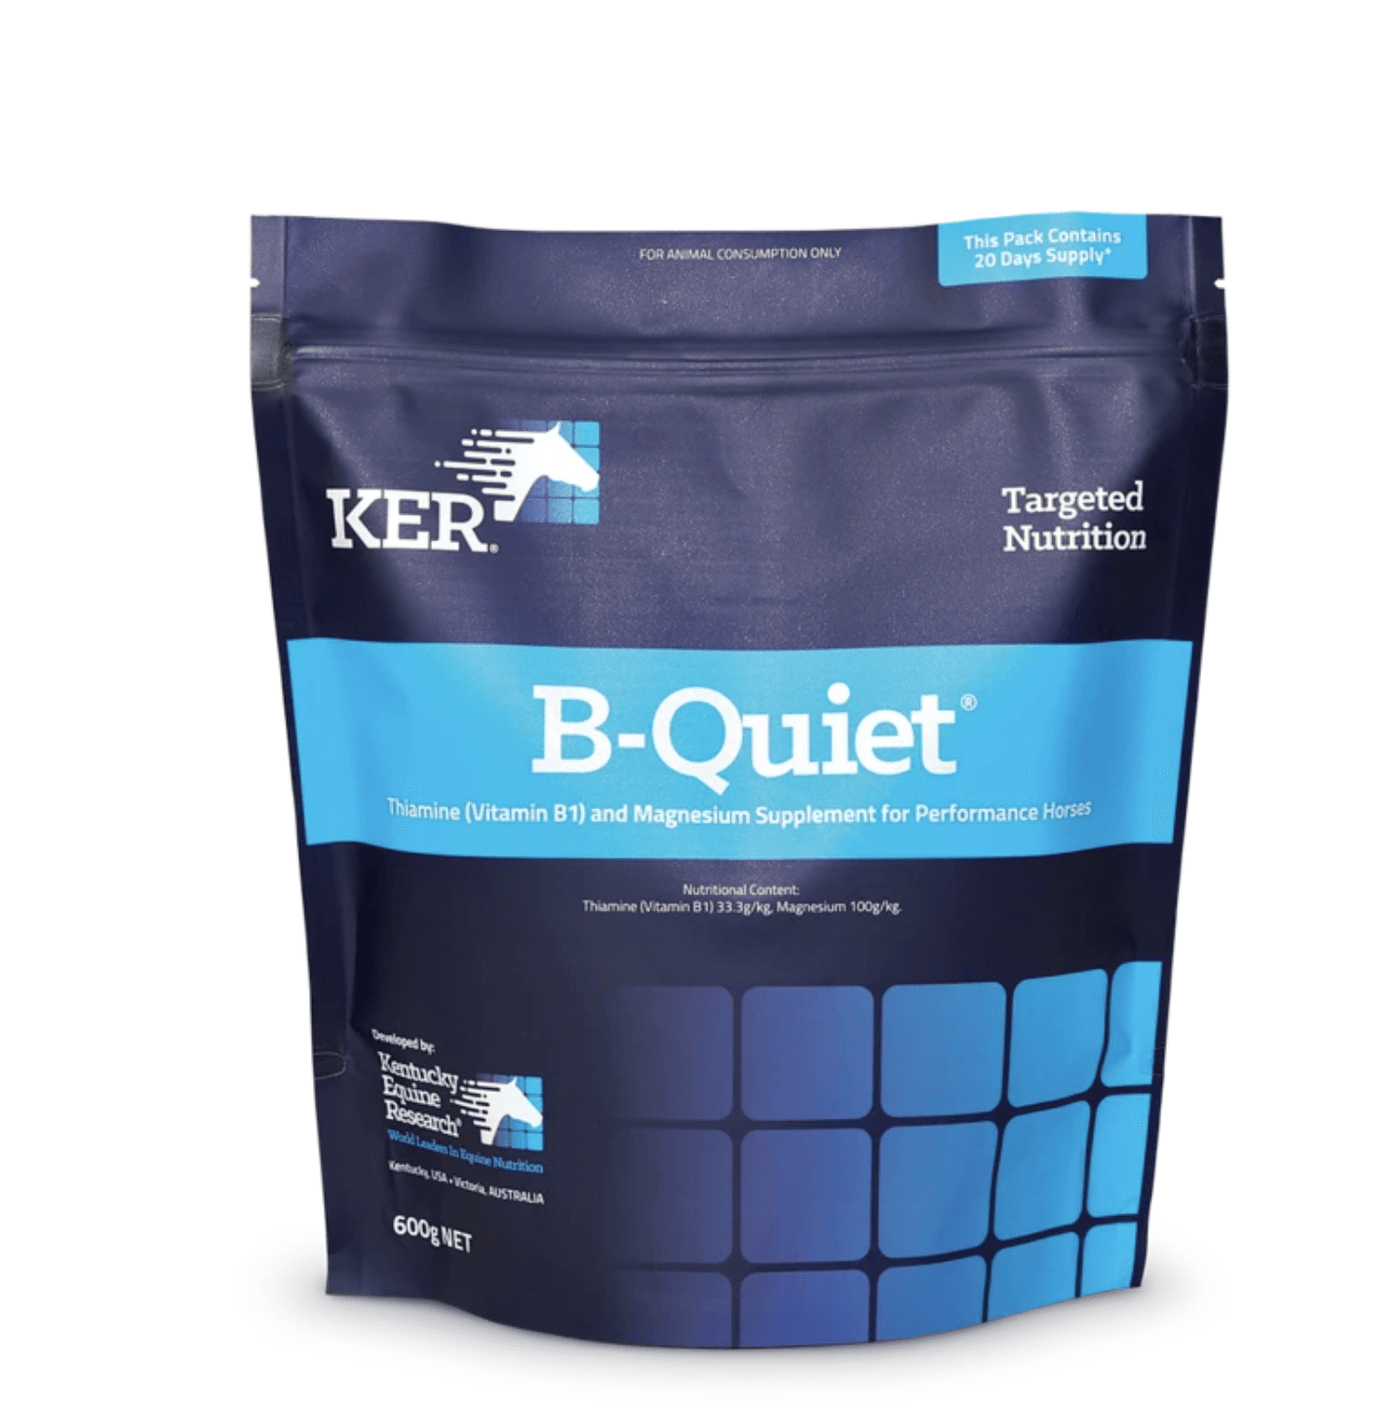 B-Quiet Powder - 600g